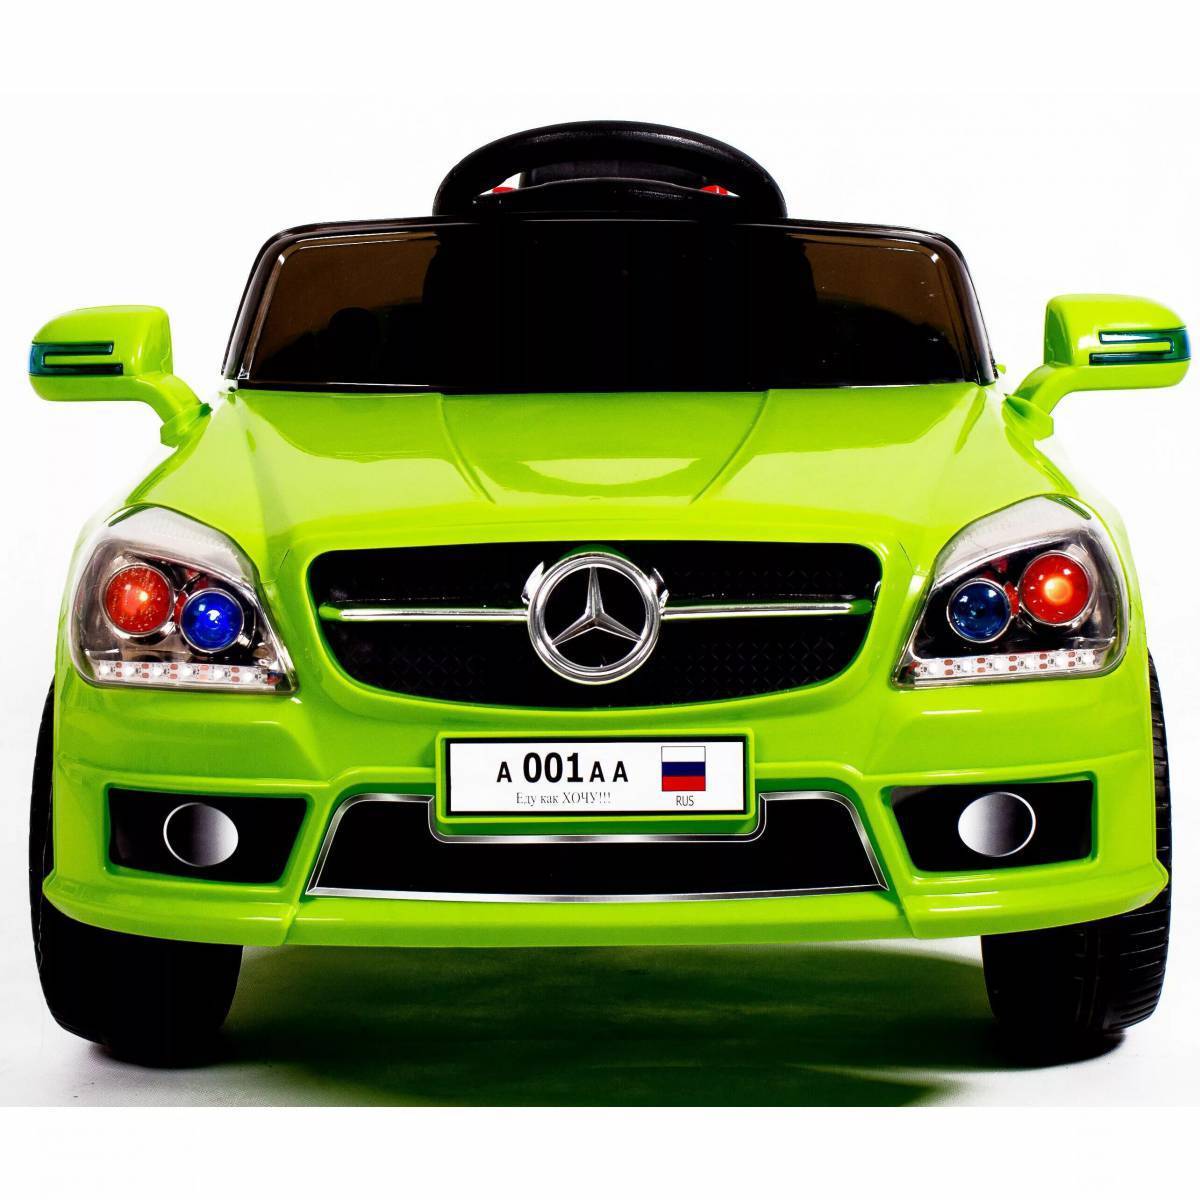 Автомобиль для детей. Детская машина. Зеленая машина для детей. Машины картинки для детей цветные. Про машинках можно